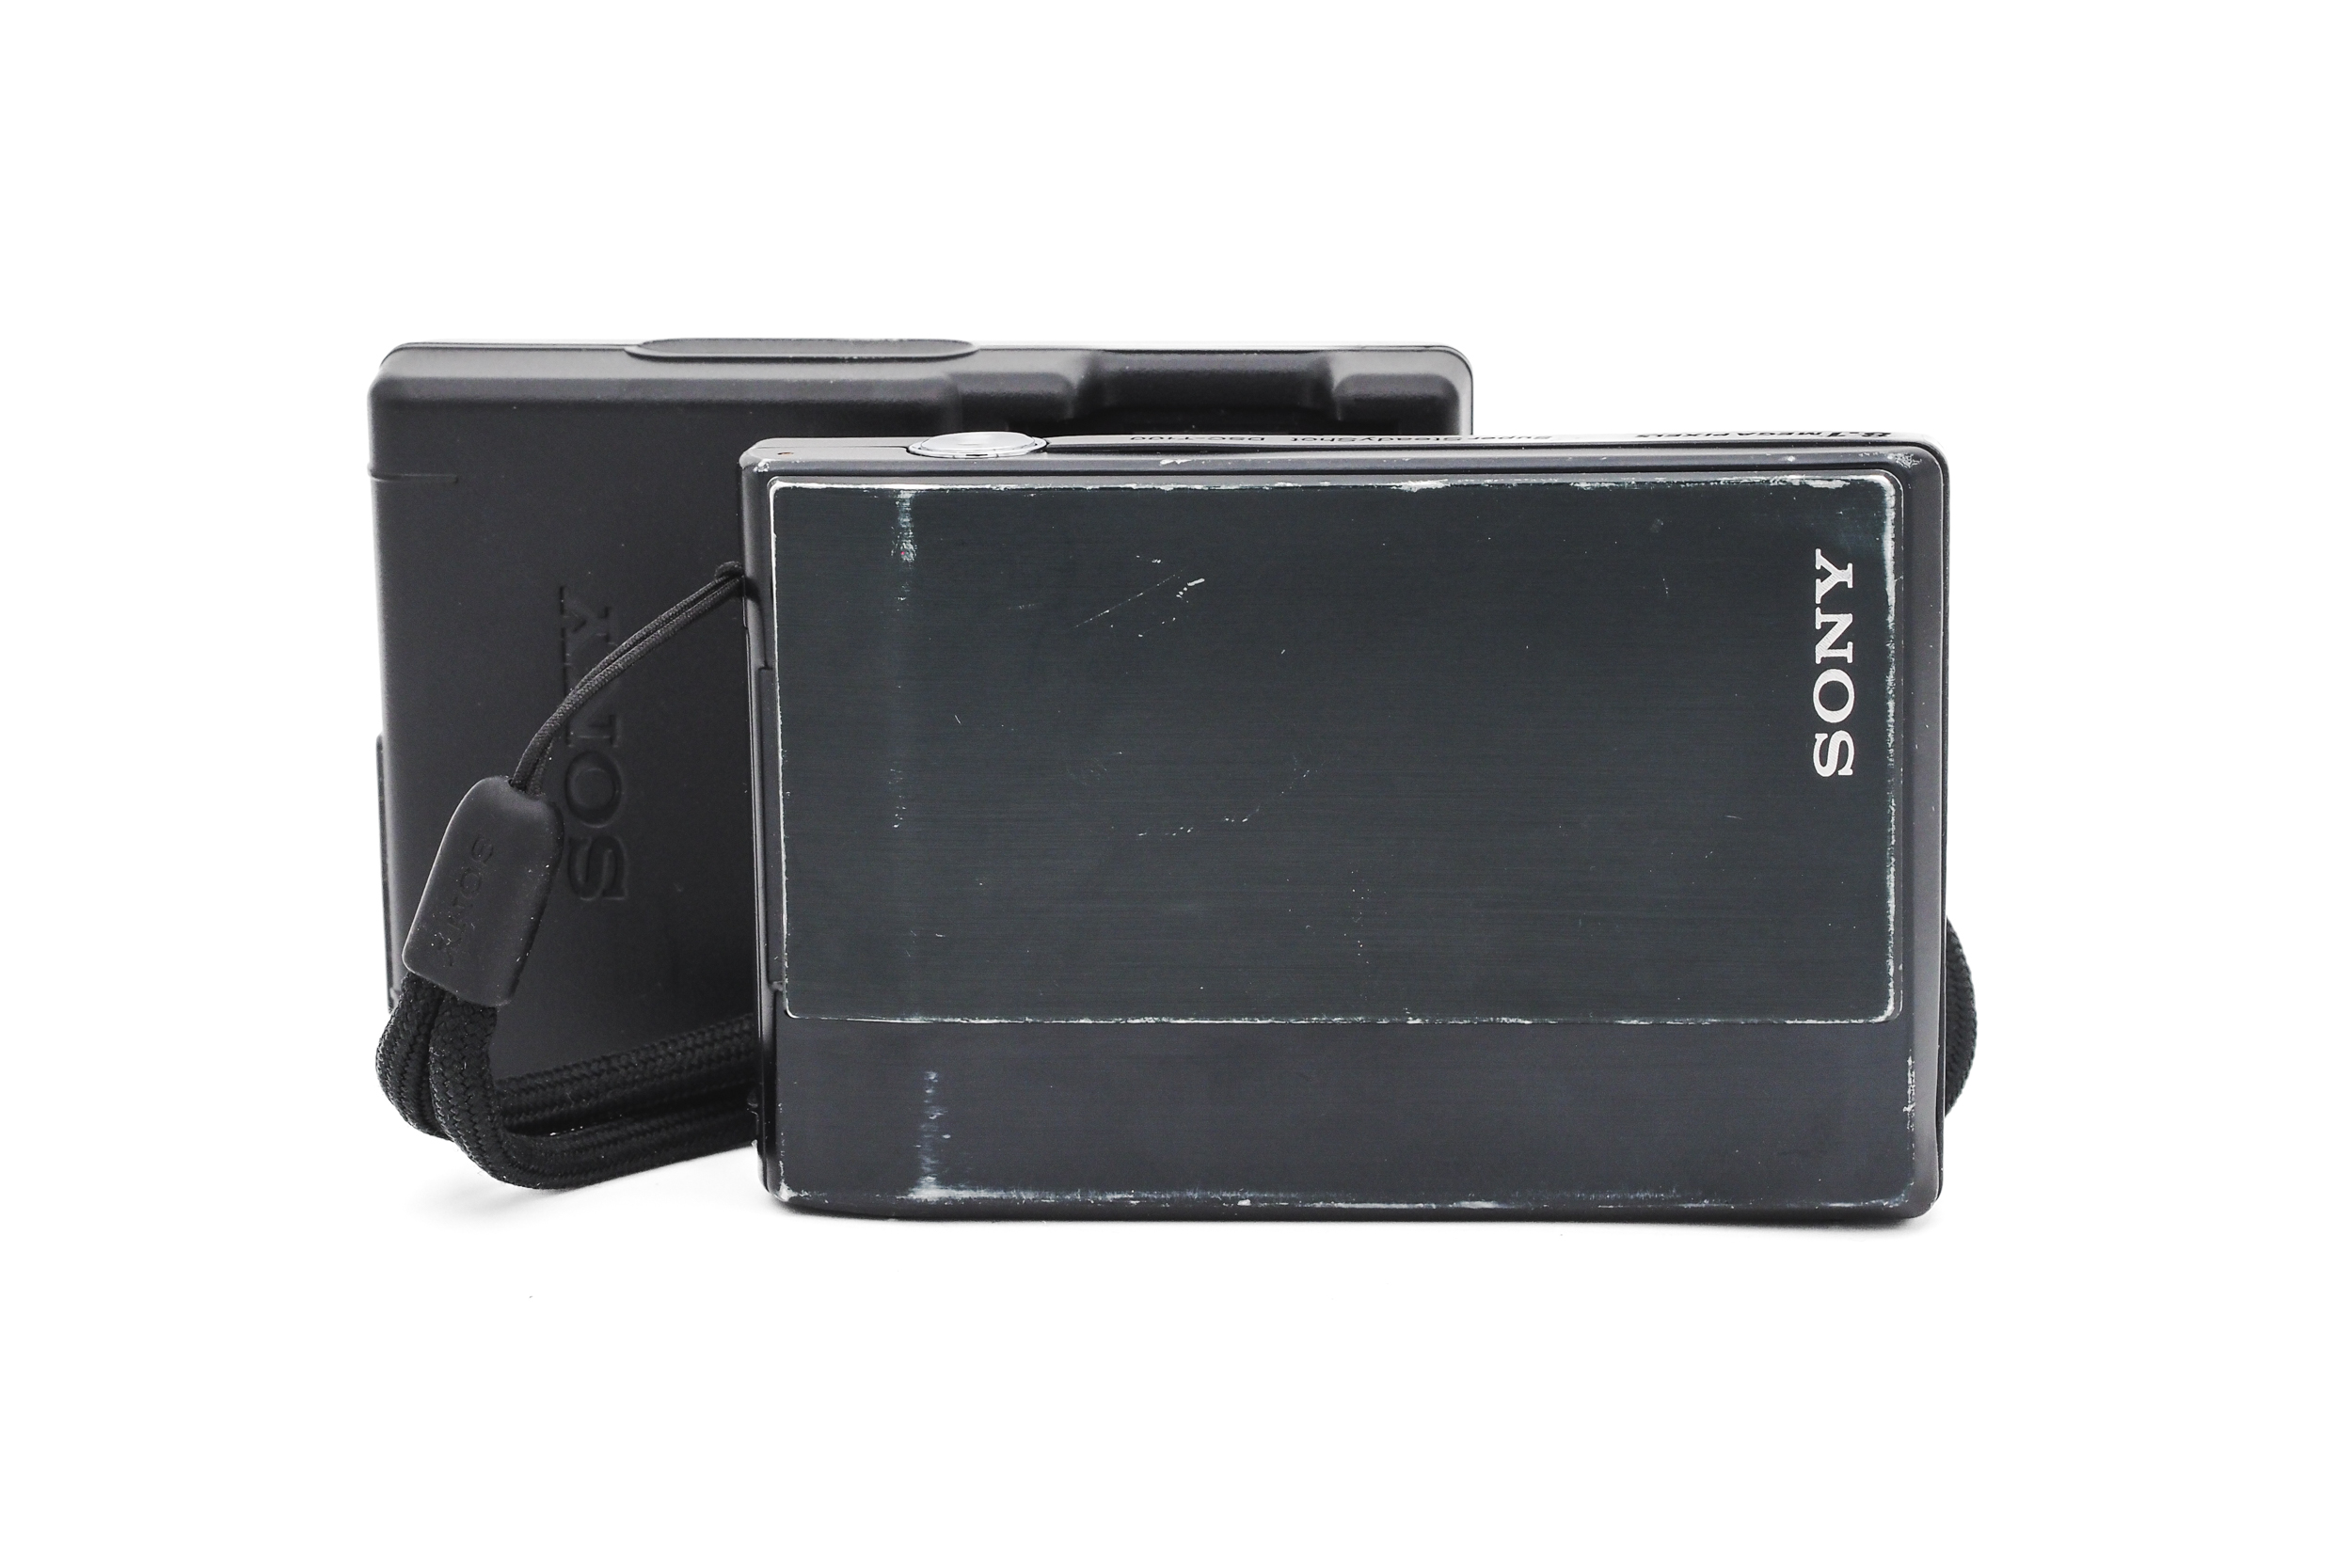 Sony DSC-T100 2007